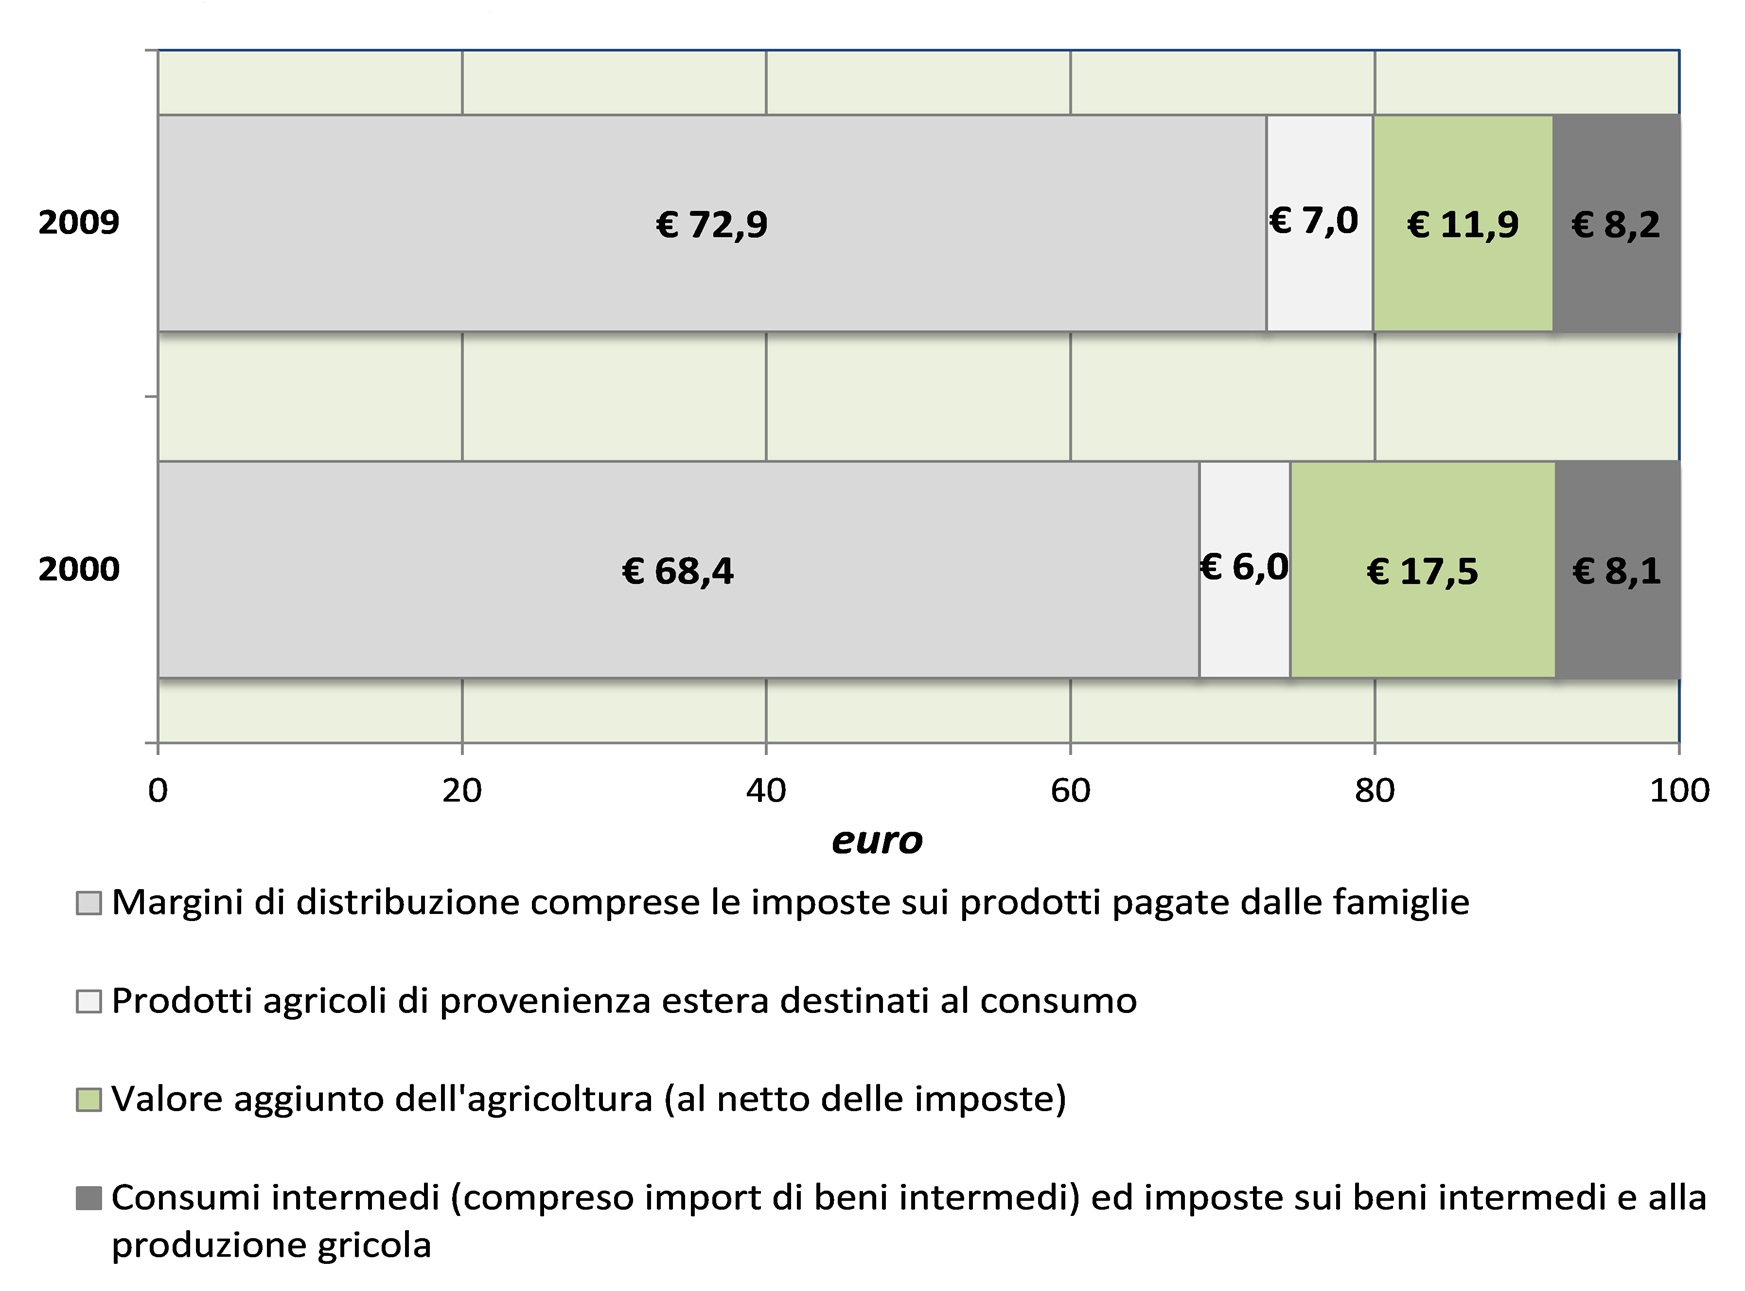 Filiera agroalimentare, va all'industria la quota maggiore degli utili (43%)